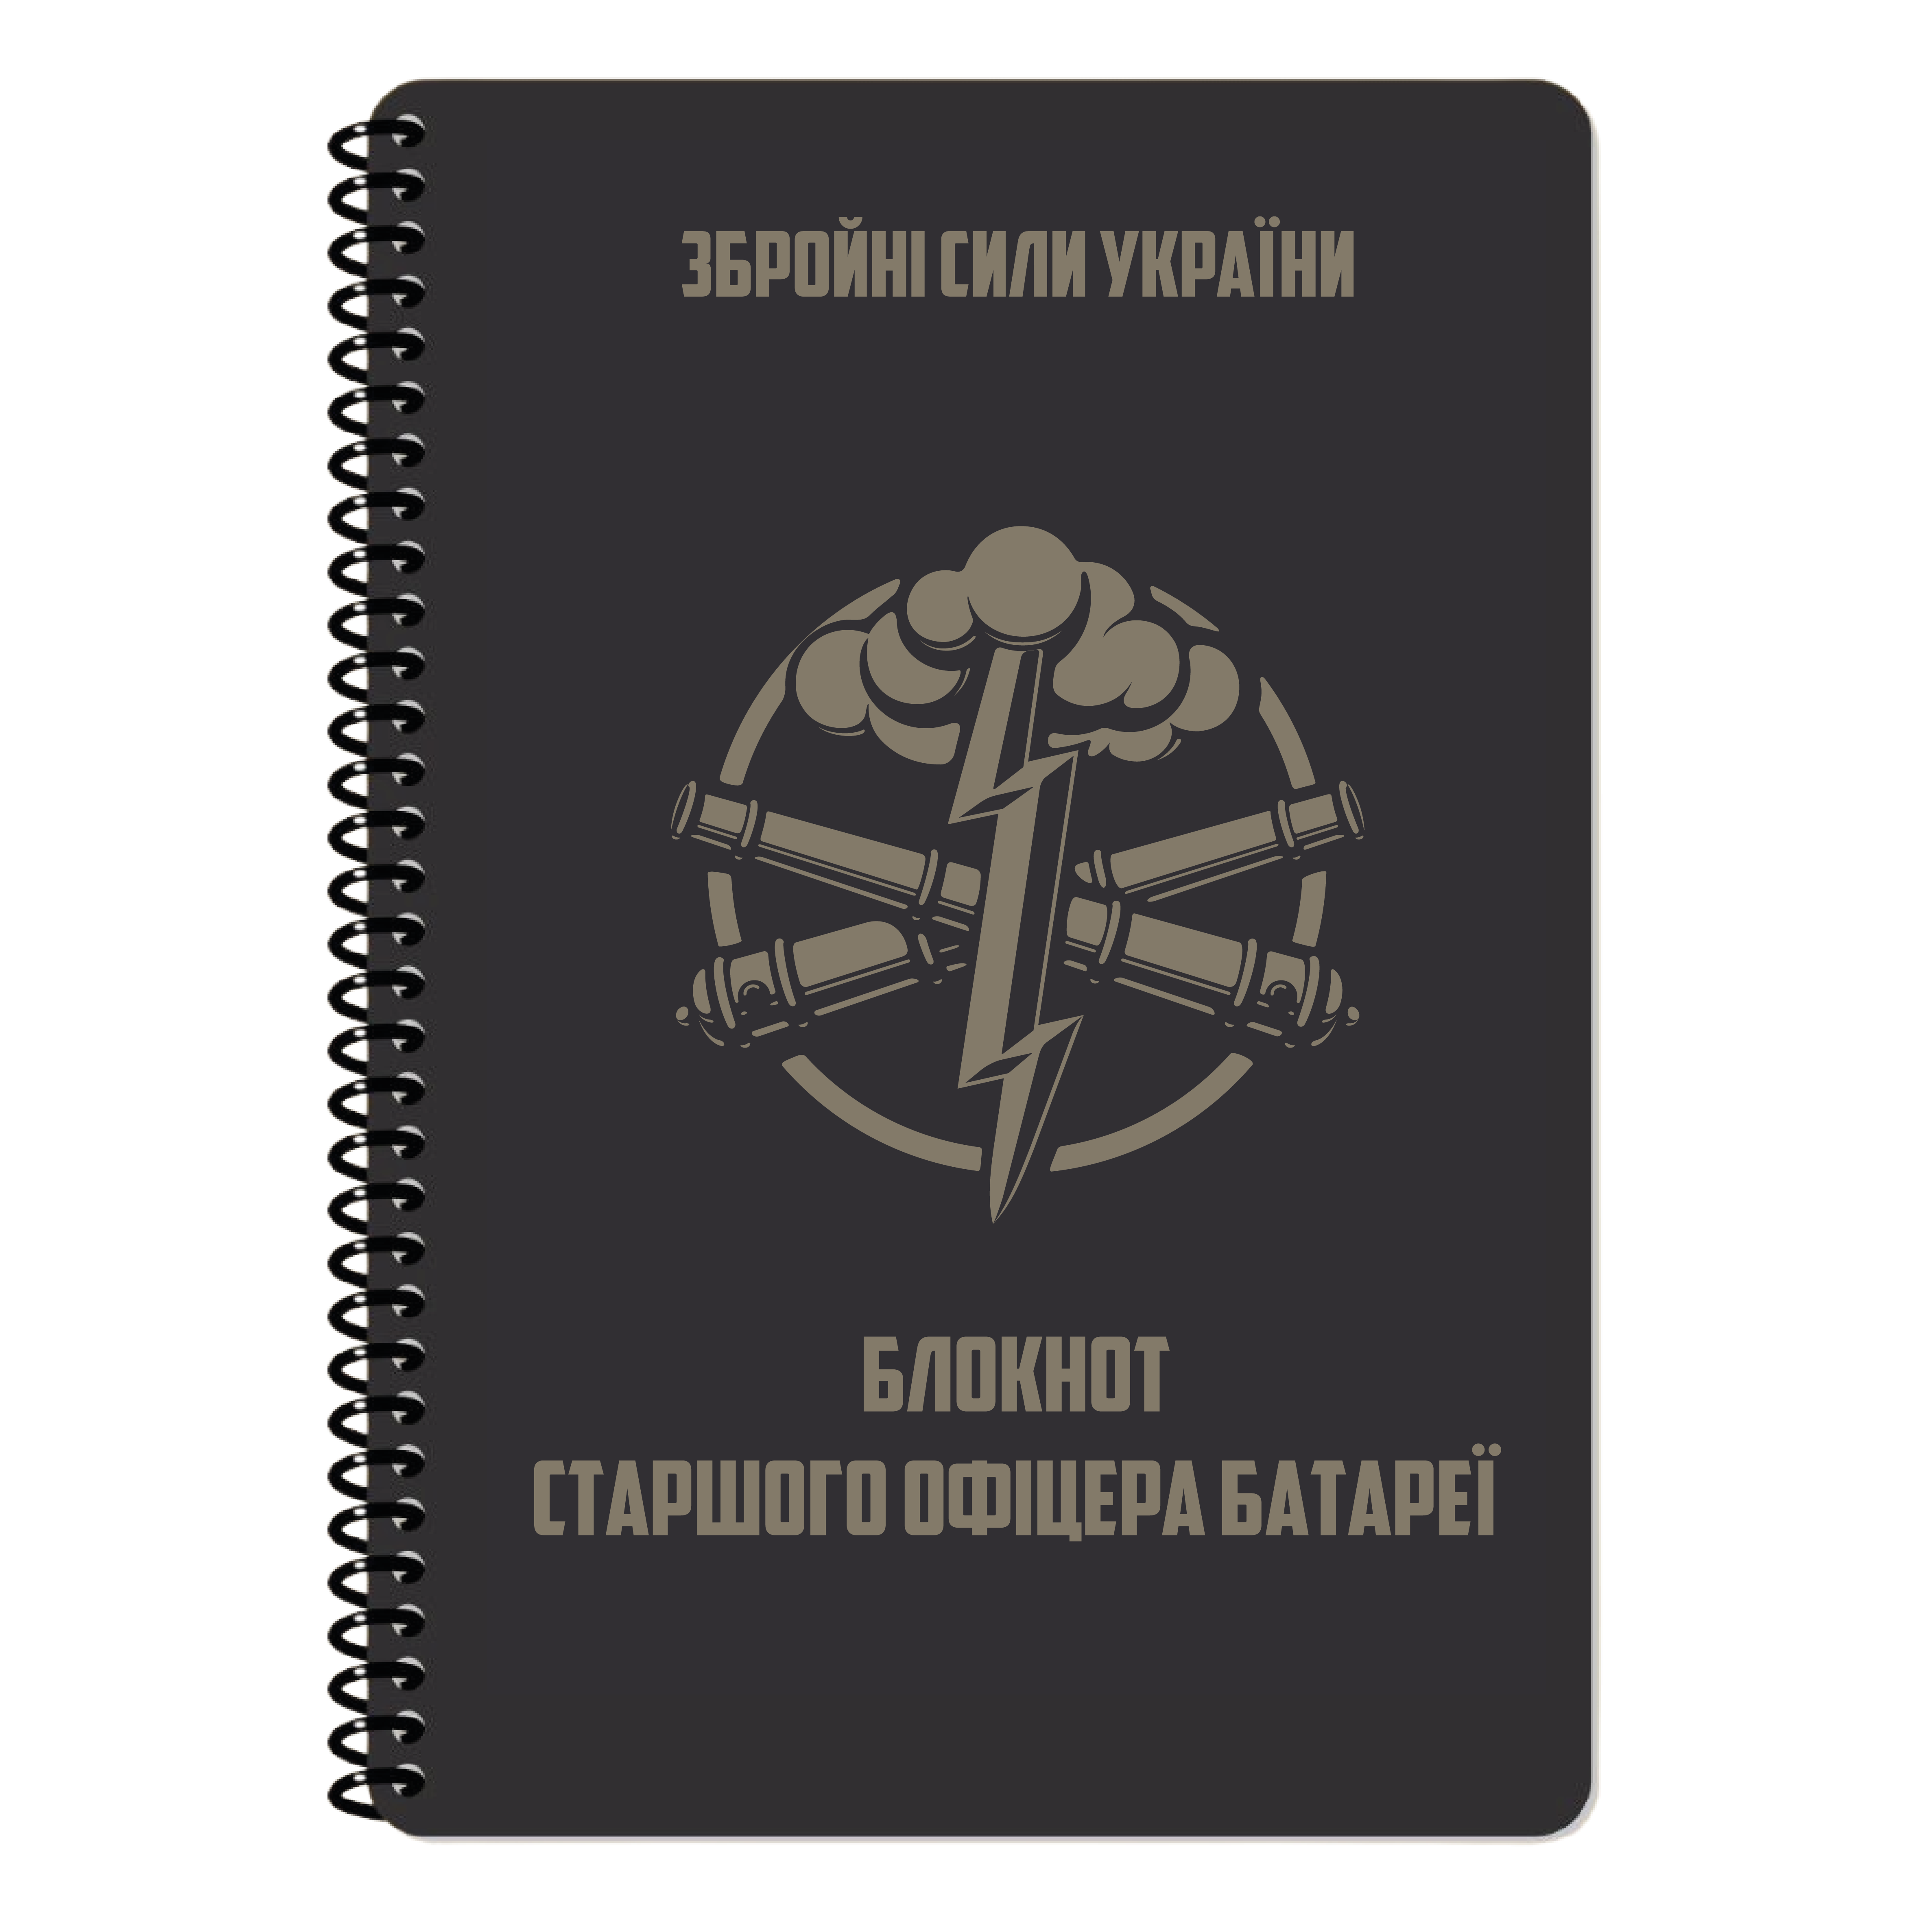 Блокнот СОБ, Ecopybook, (190х269)